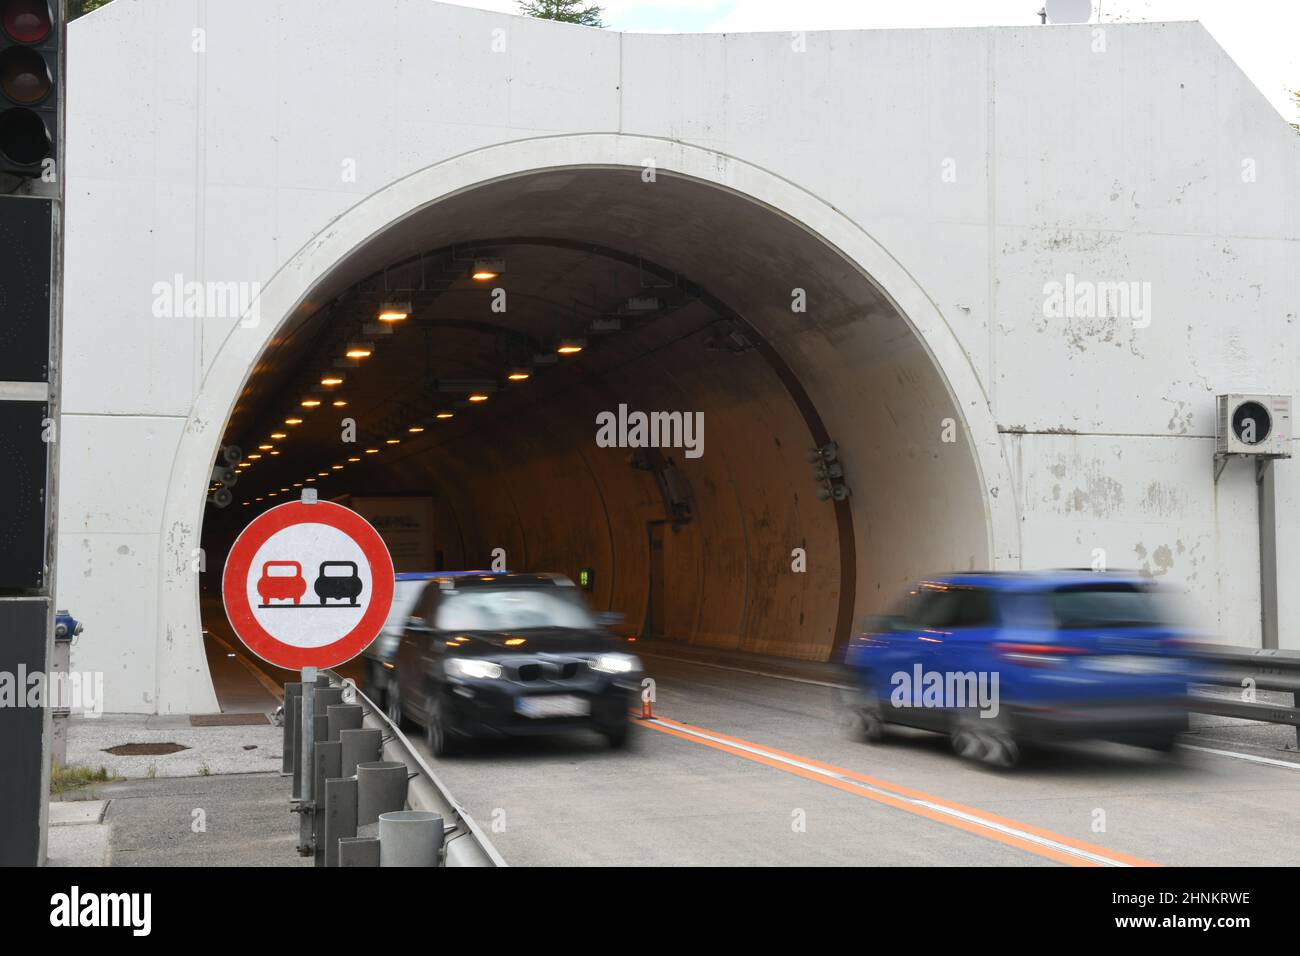 Tunnel-Einfahrt auf der Pyhrnautobahn A9, Oberösterreich, Österreich - Tunnel entrance on the Pyhrnautobahn A9, Upper Austria, Austria Stock Photo